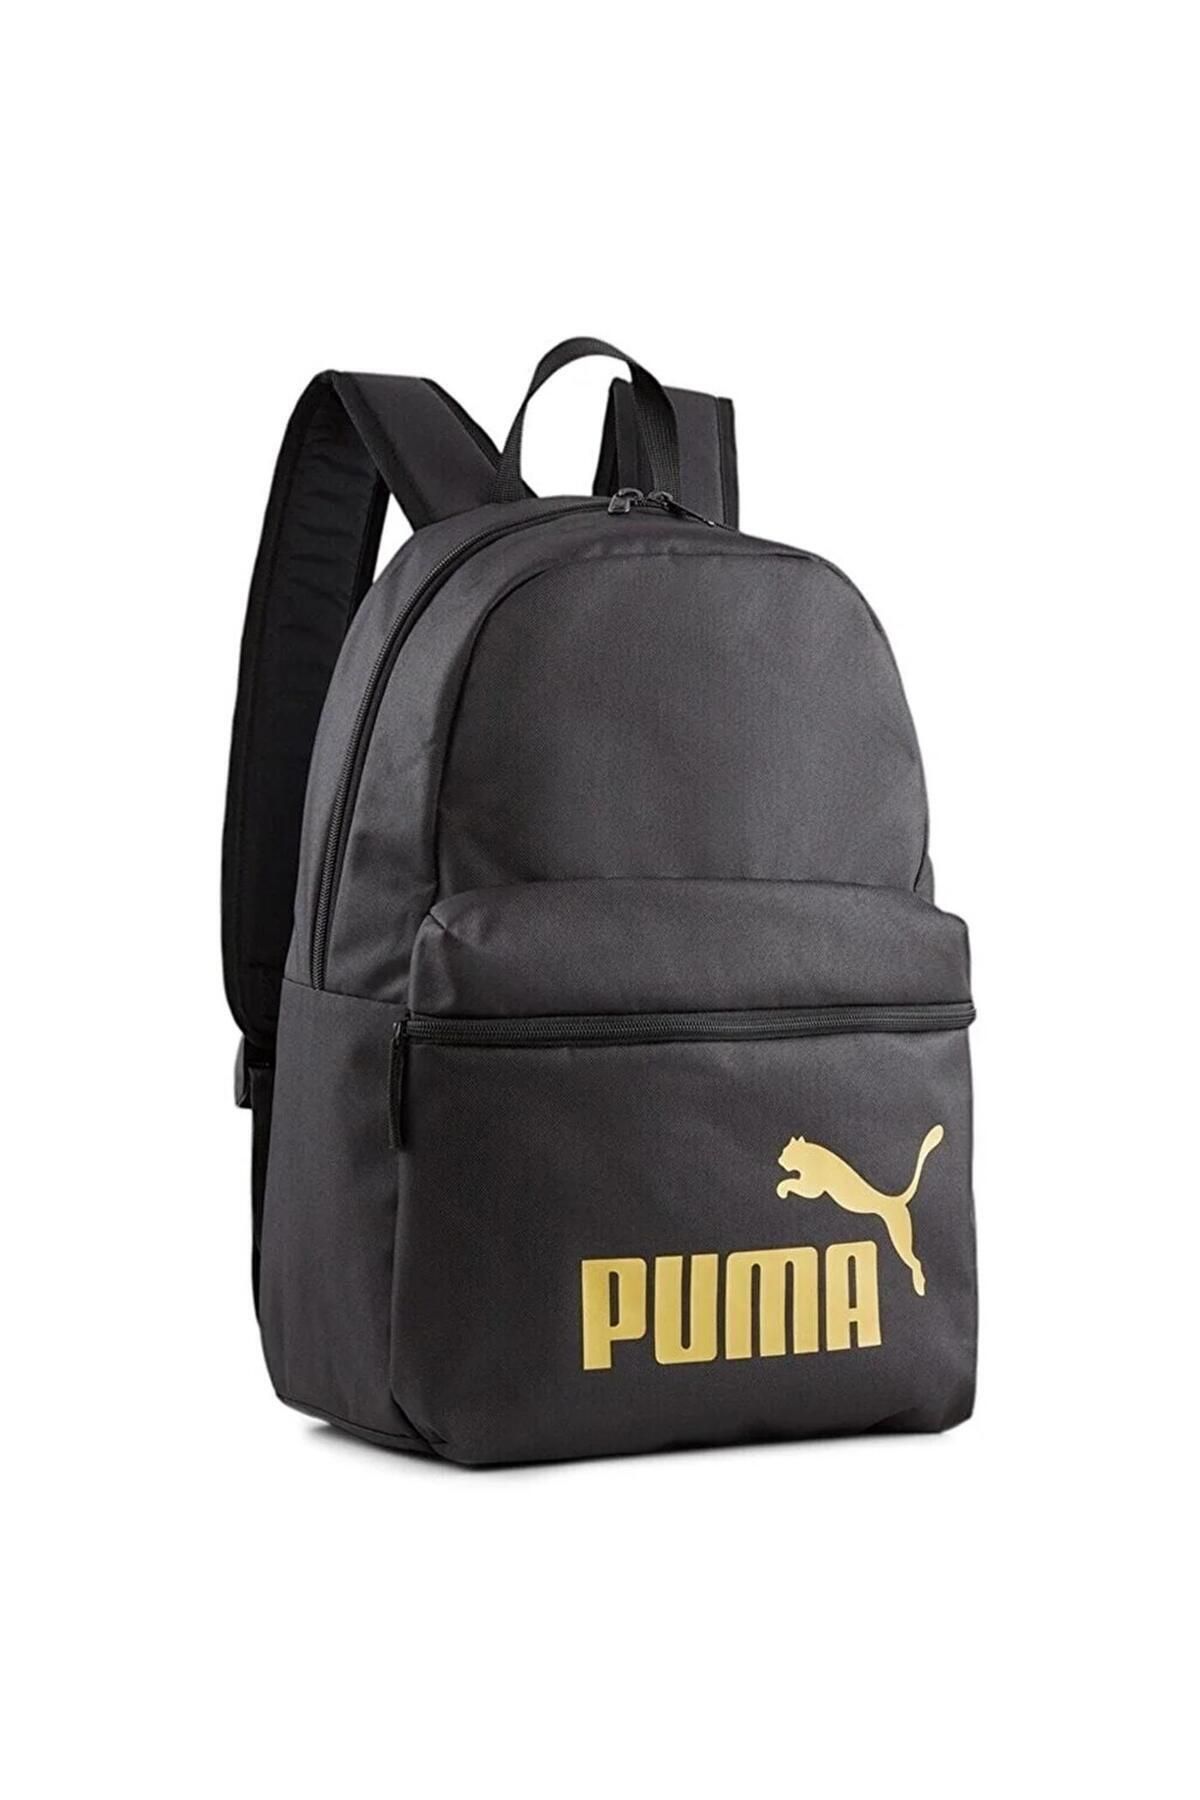 Puma Phase Backpack07994303